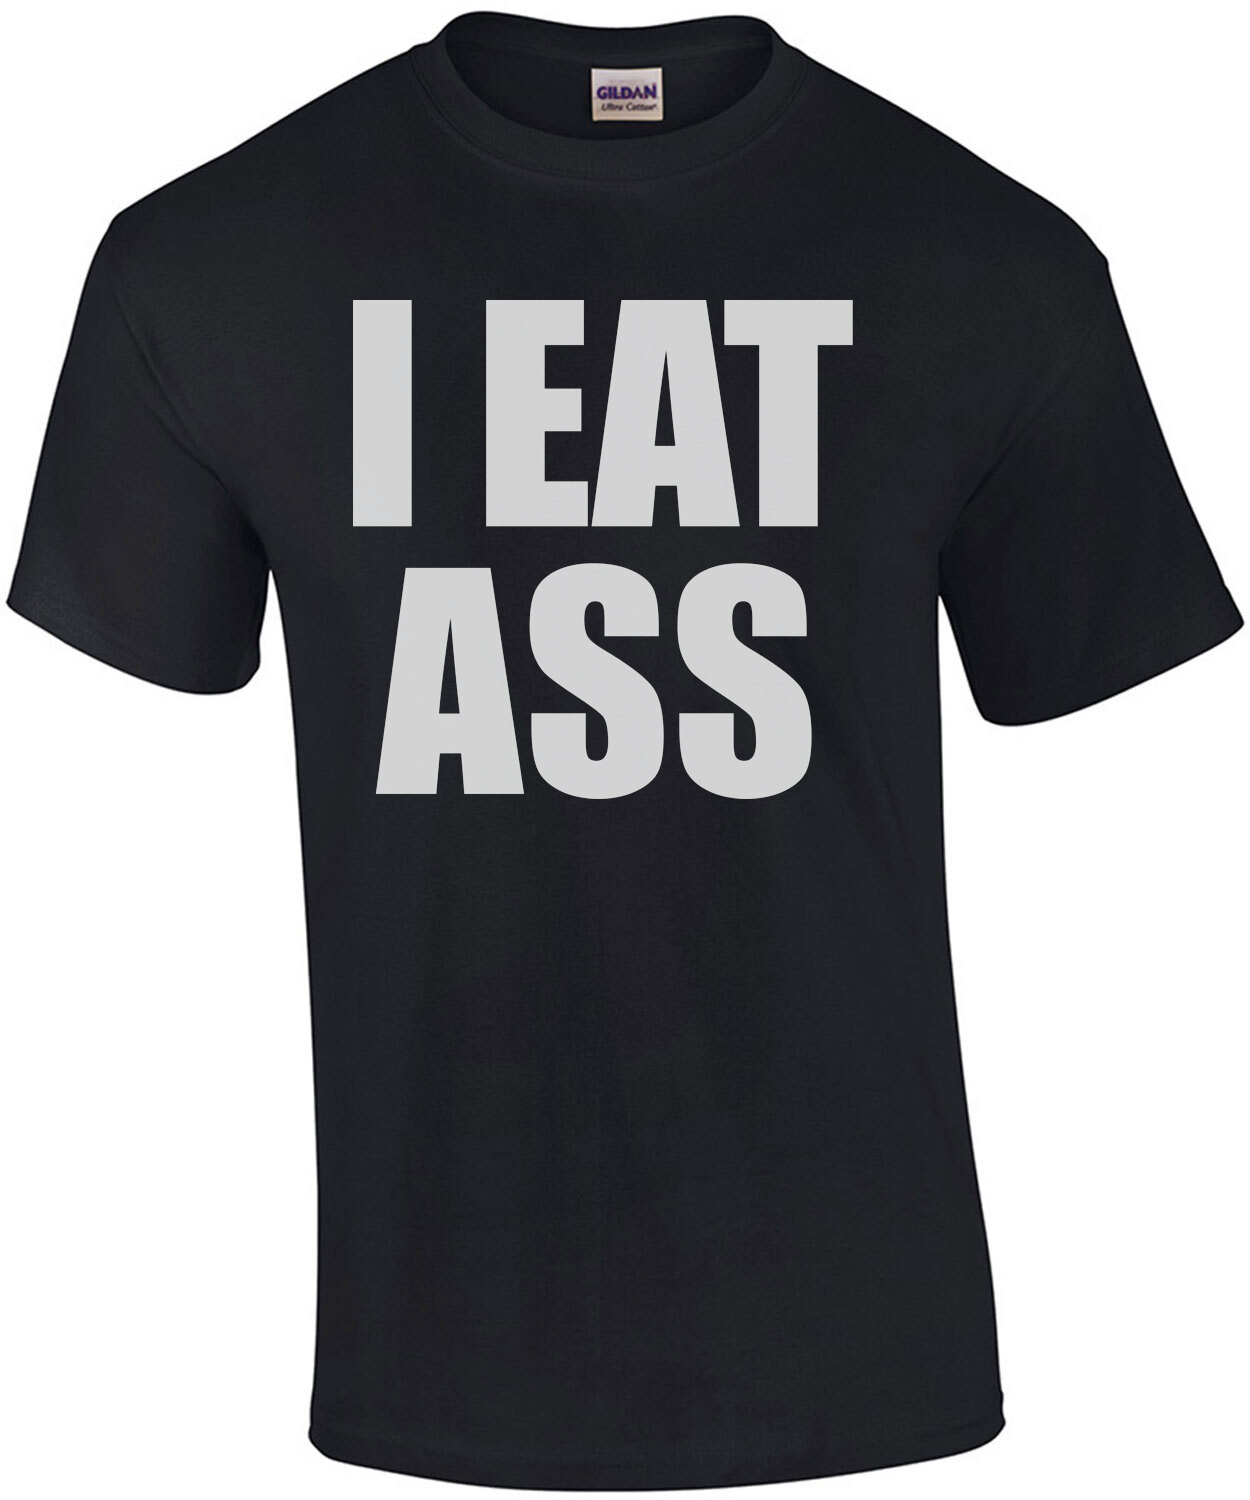 I EAT ASS - Offensive Sexual T-Shirt